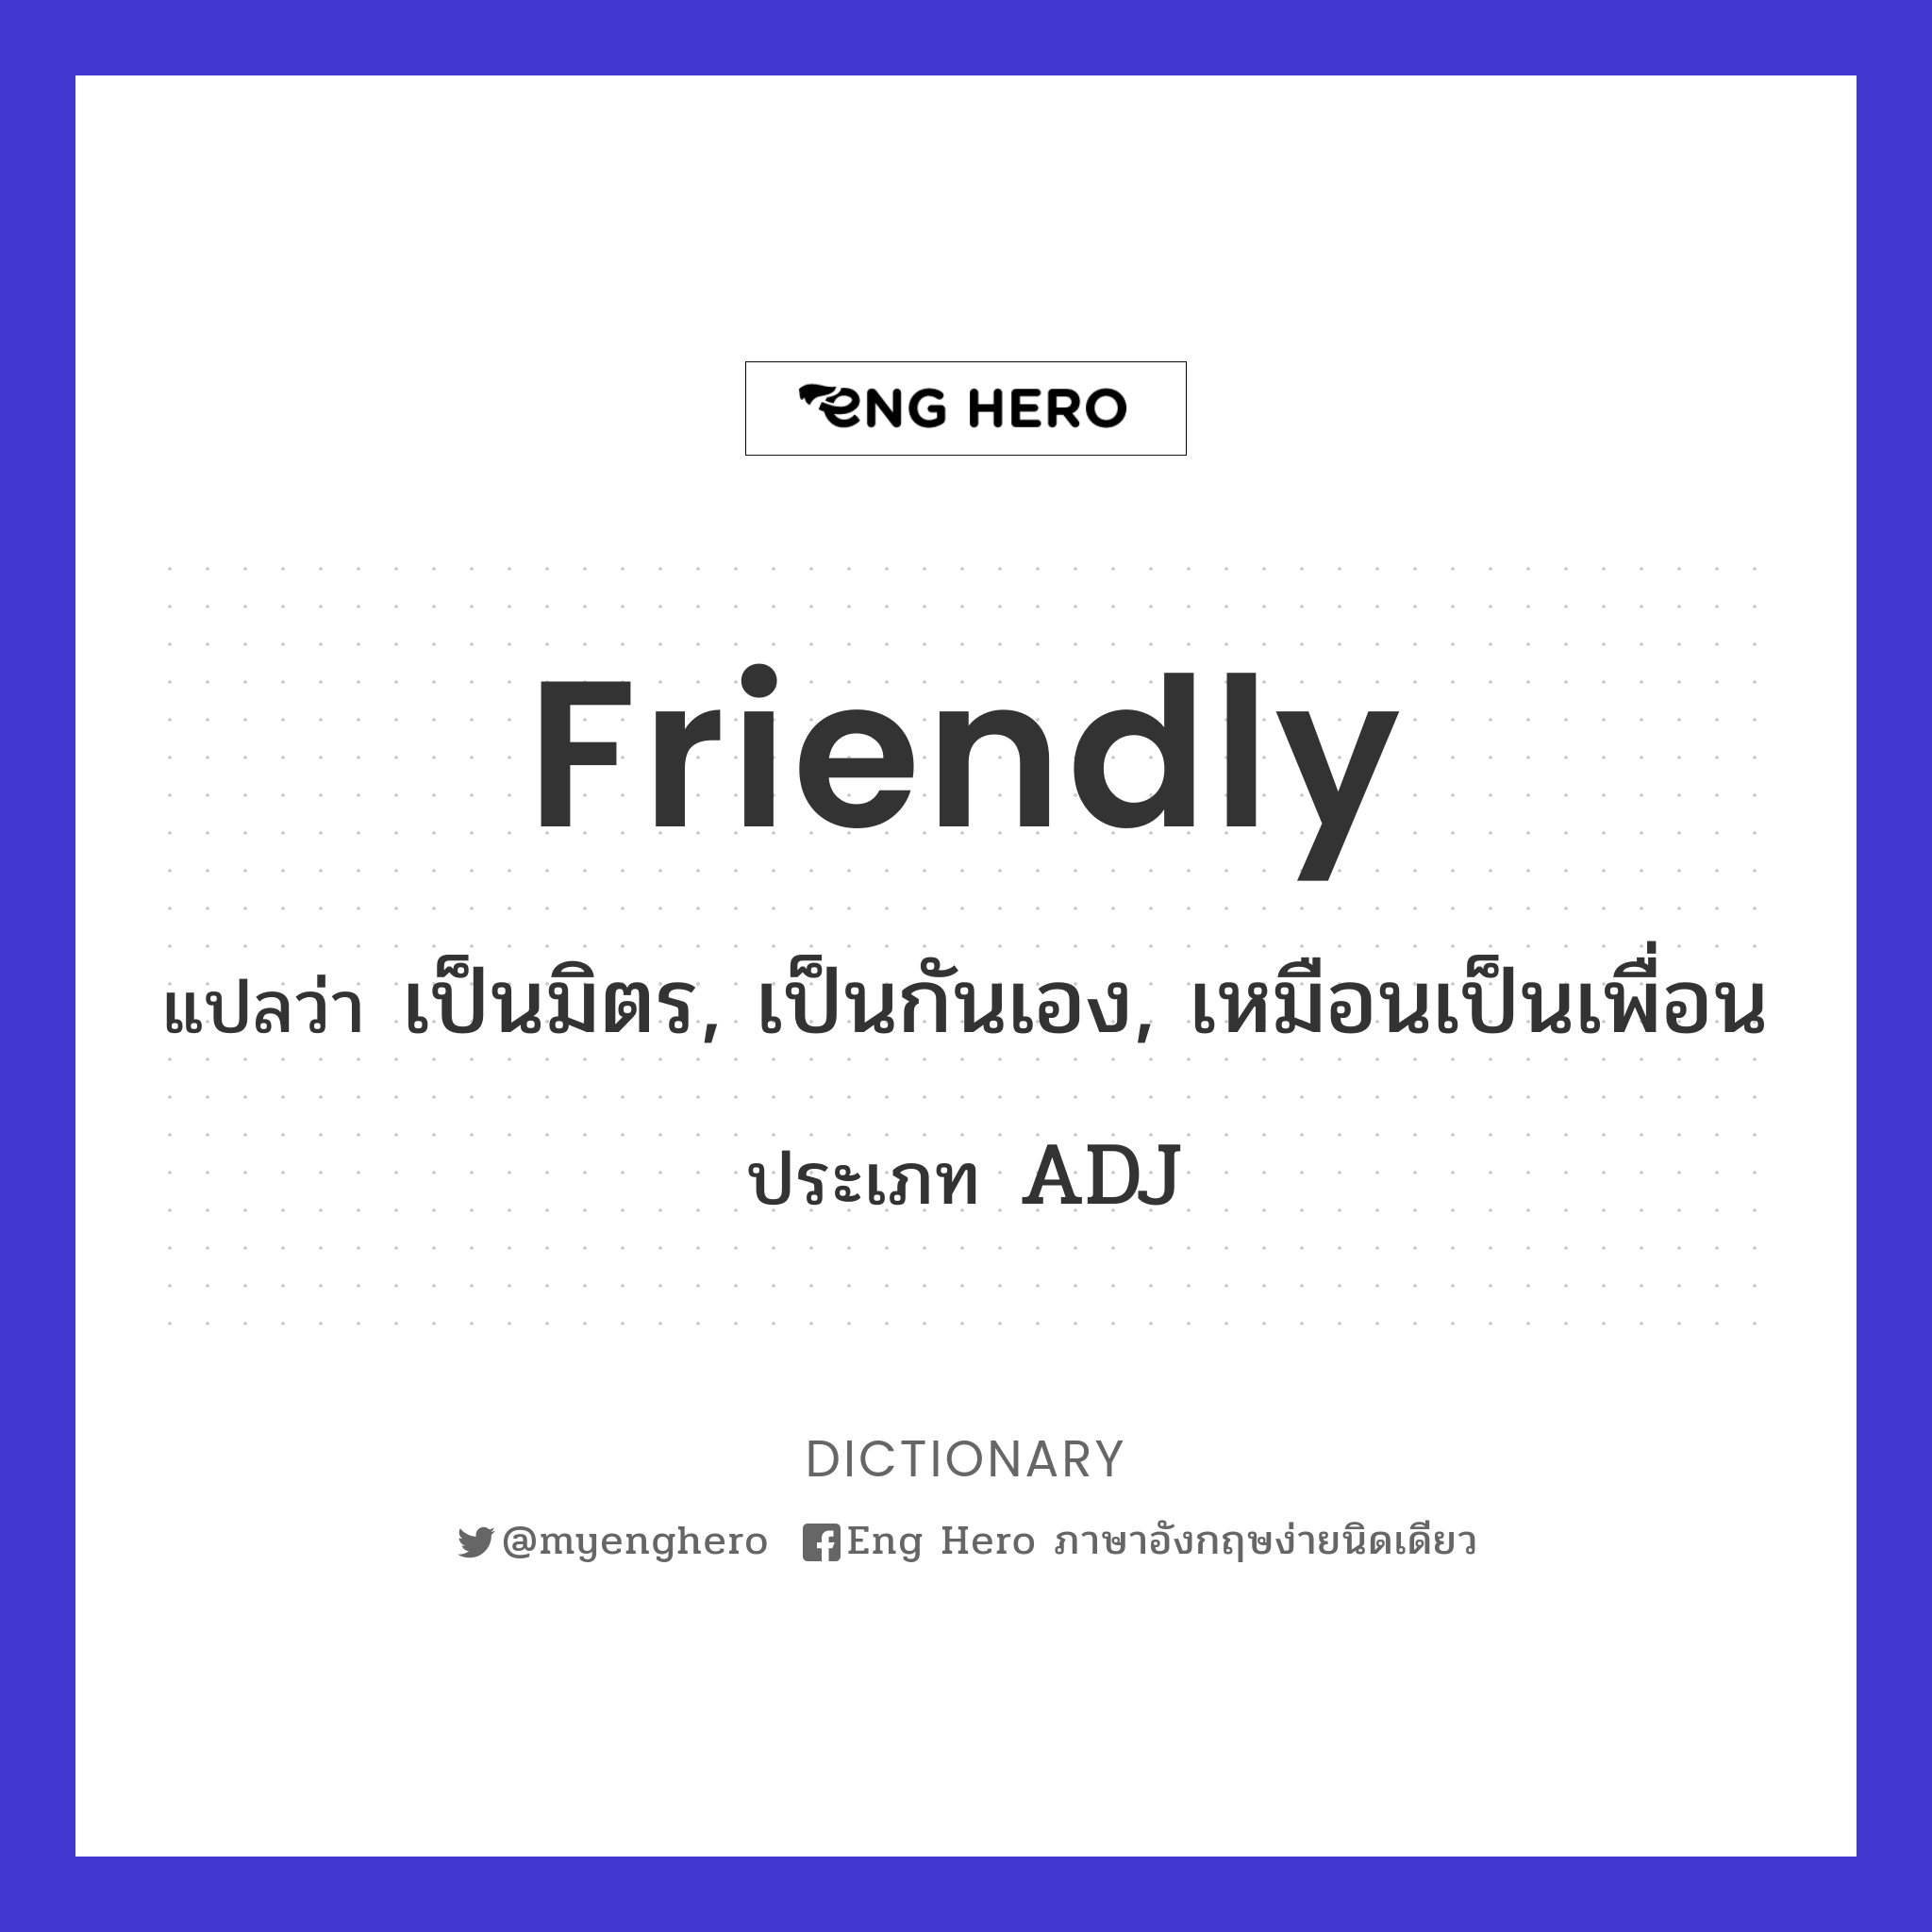 Friendly แปลว่า เป็นมิตร, เป็นกันเอง, เหมือนเป็นเพื่อน | Eng Hero เรียน ภาษาอังกฤษ ออนไลน์ ฟรี